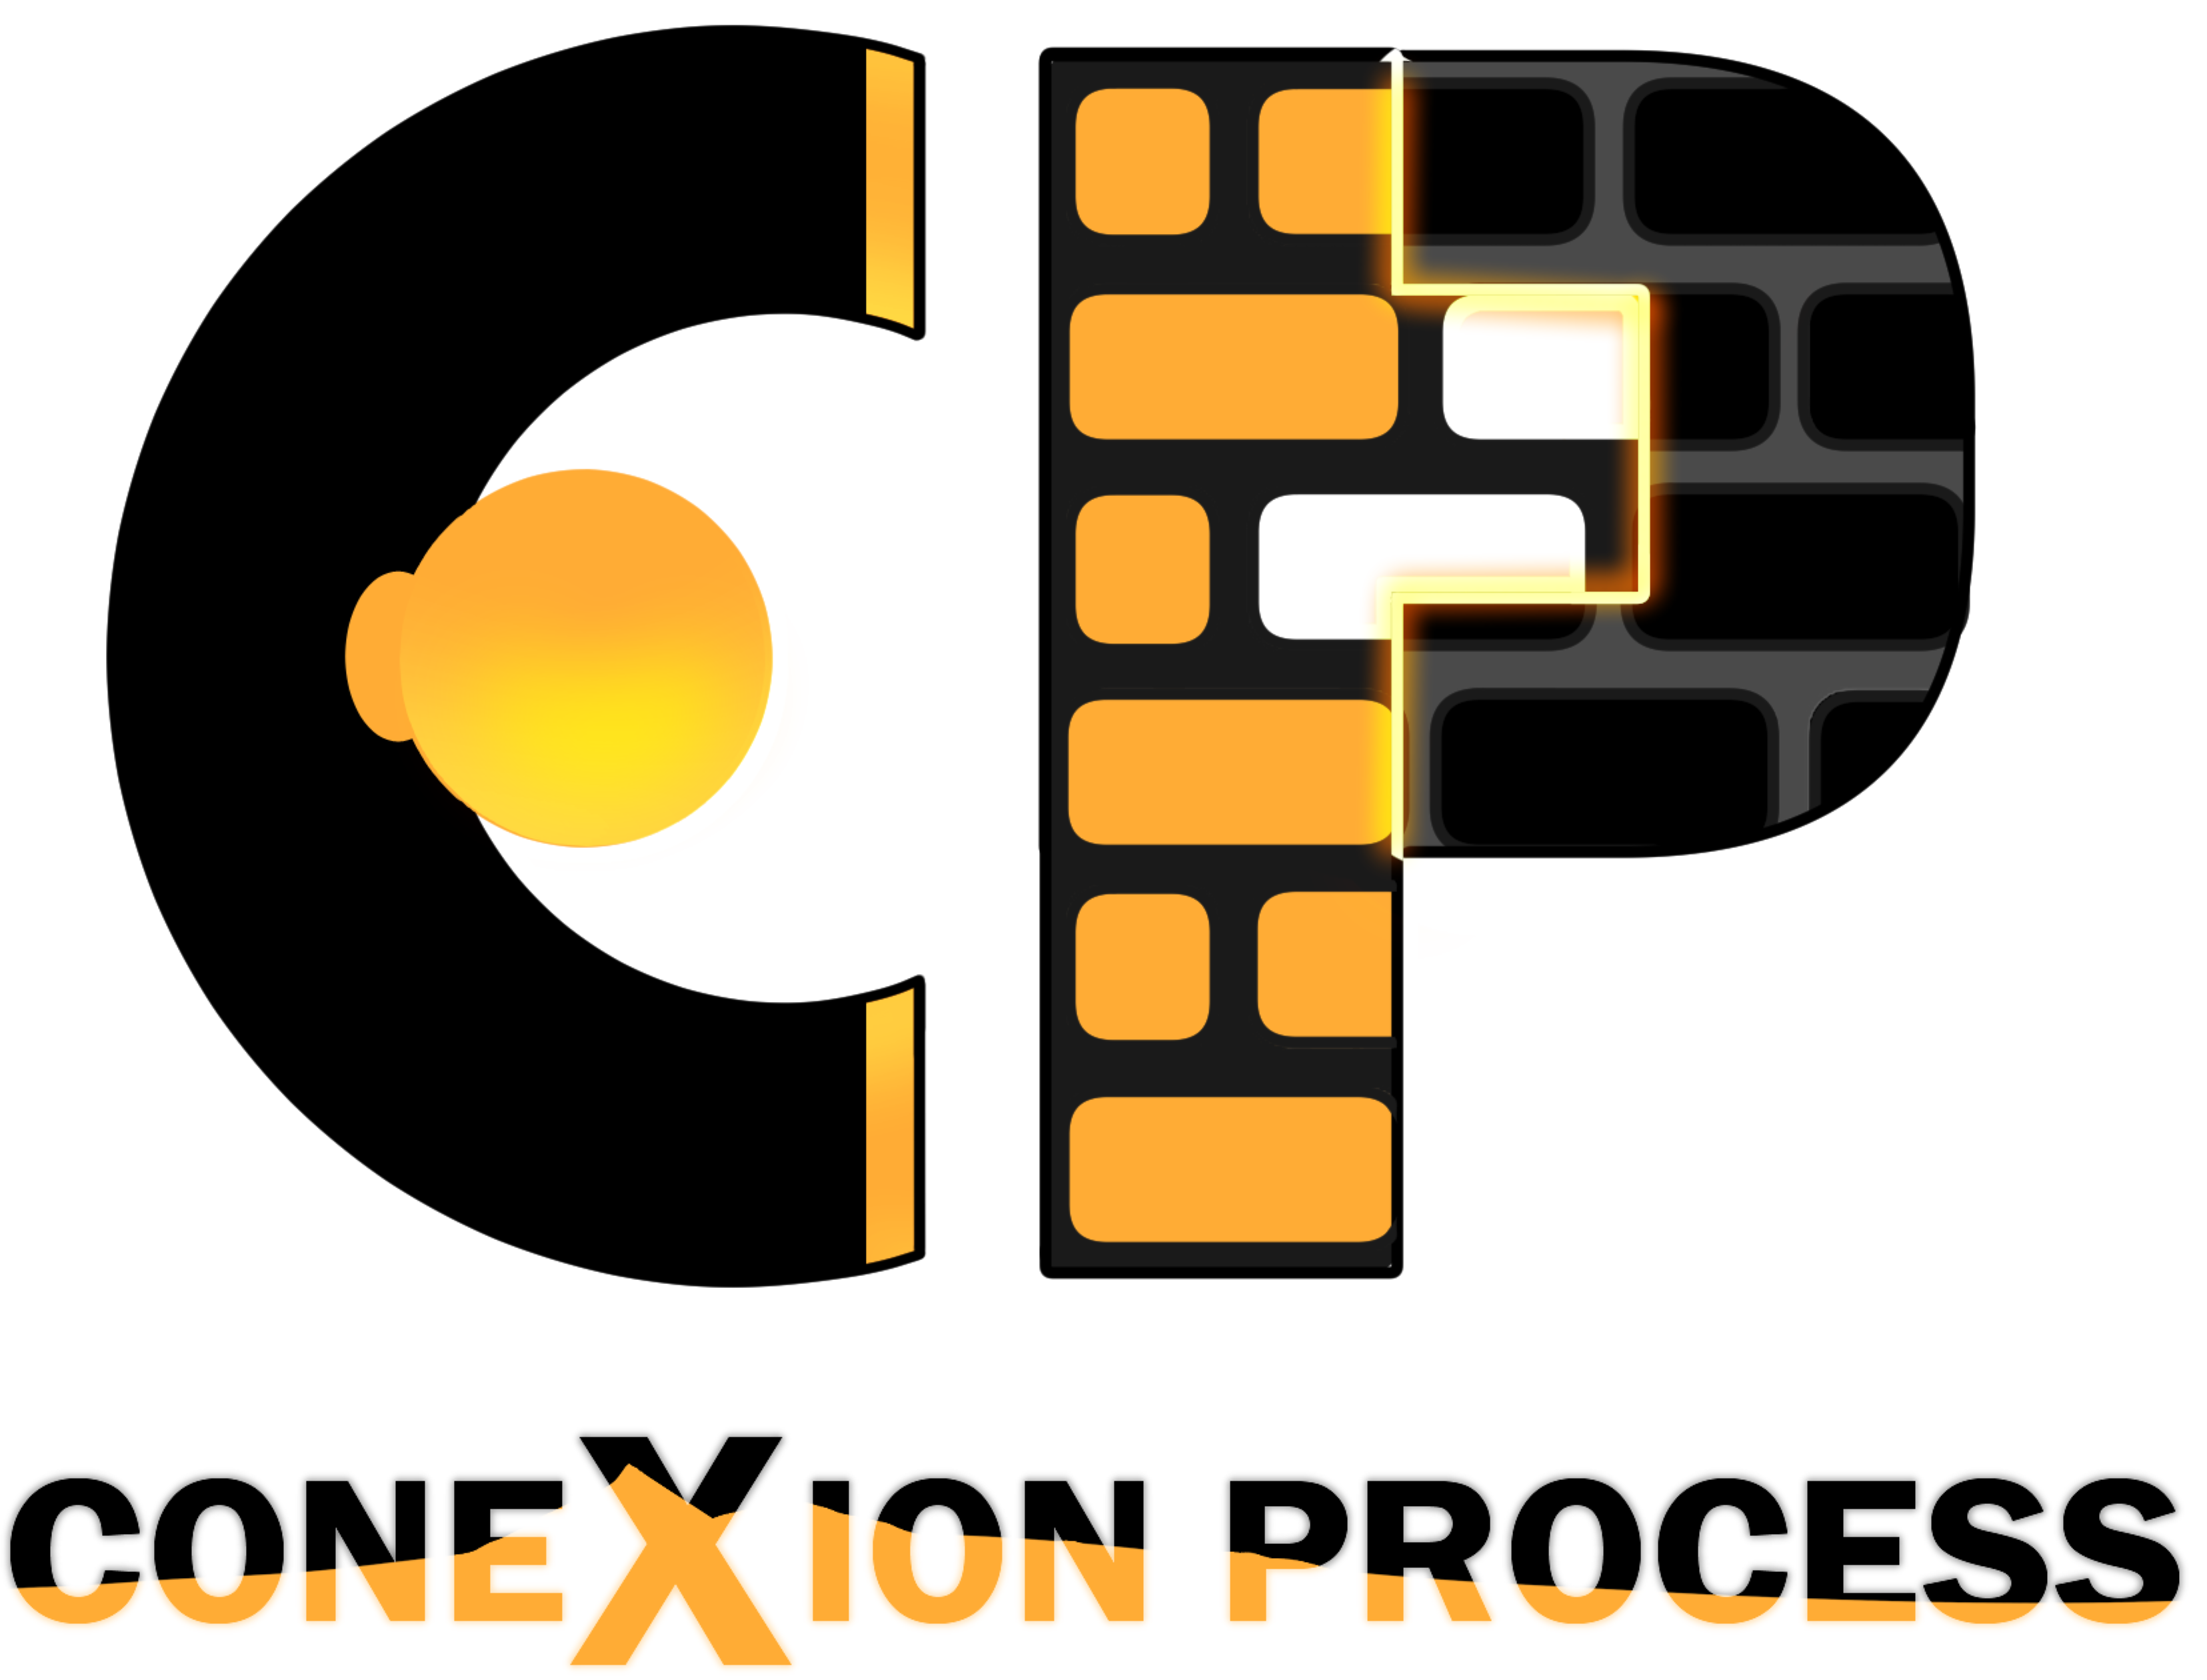 ConeXion Process